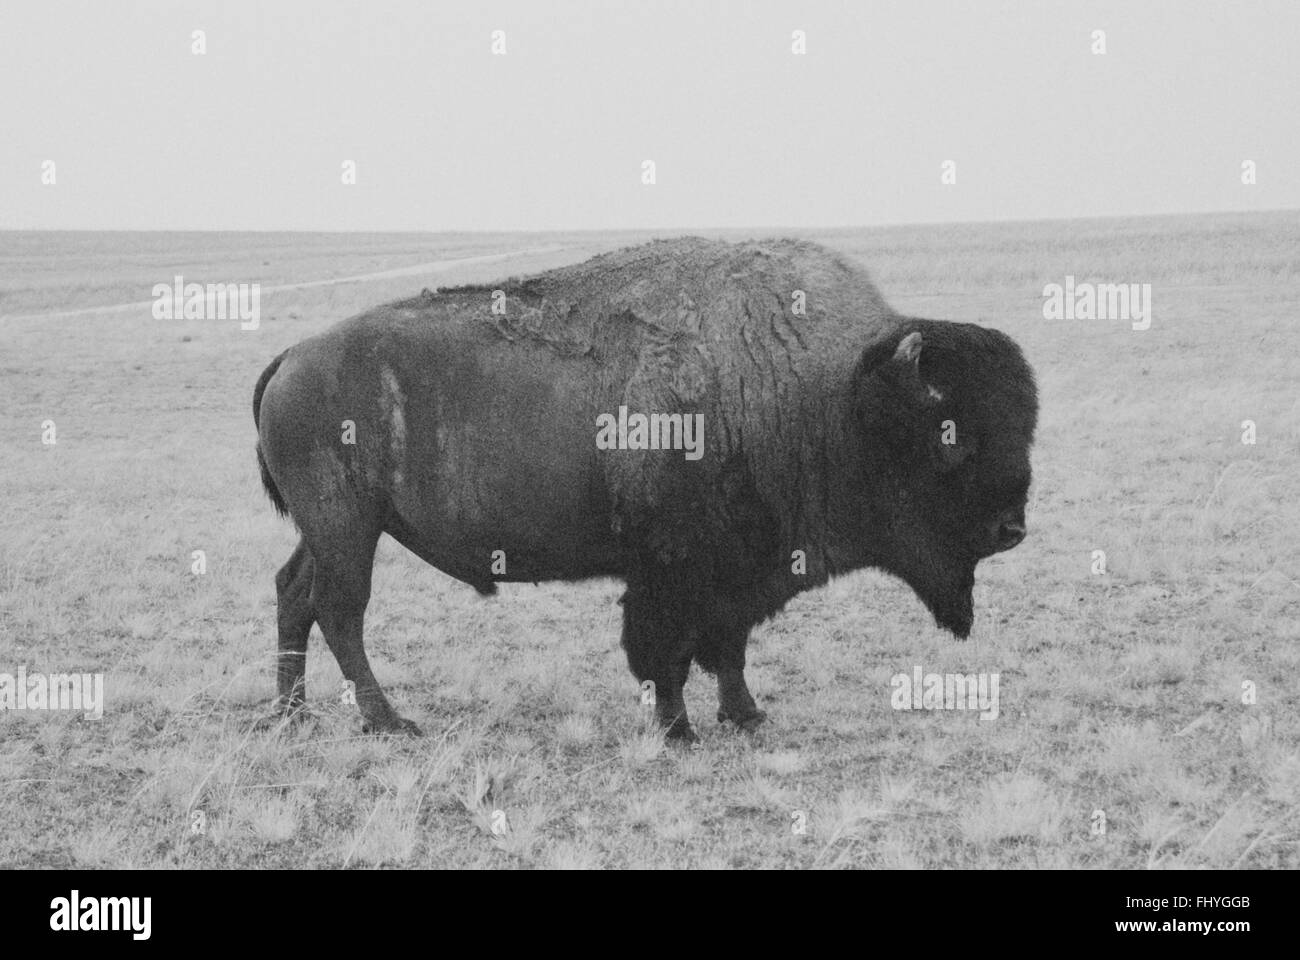 Un bison d'Amérique dans un champ ouvert en noir et blanc sur l'Antelope Island dans l'Utah. Banque D'Images